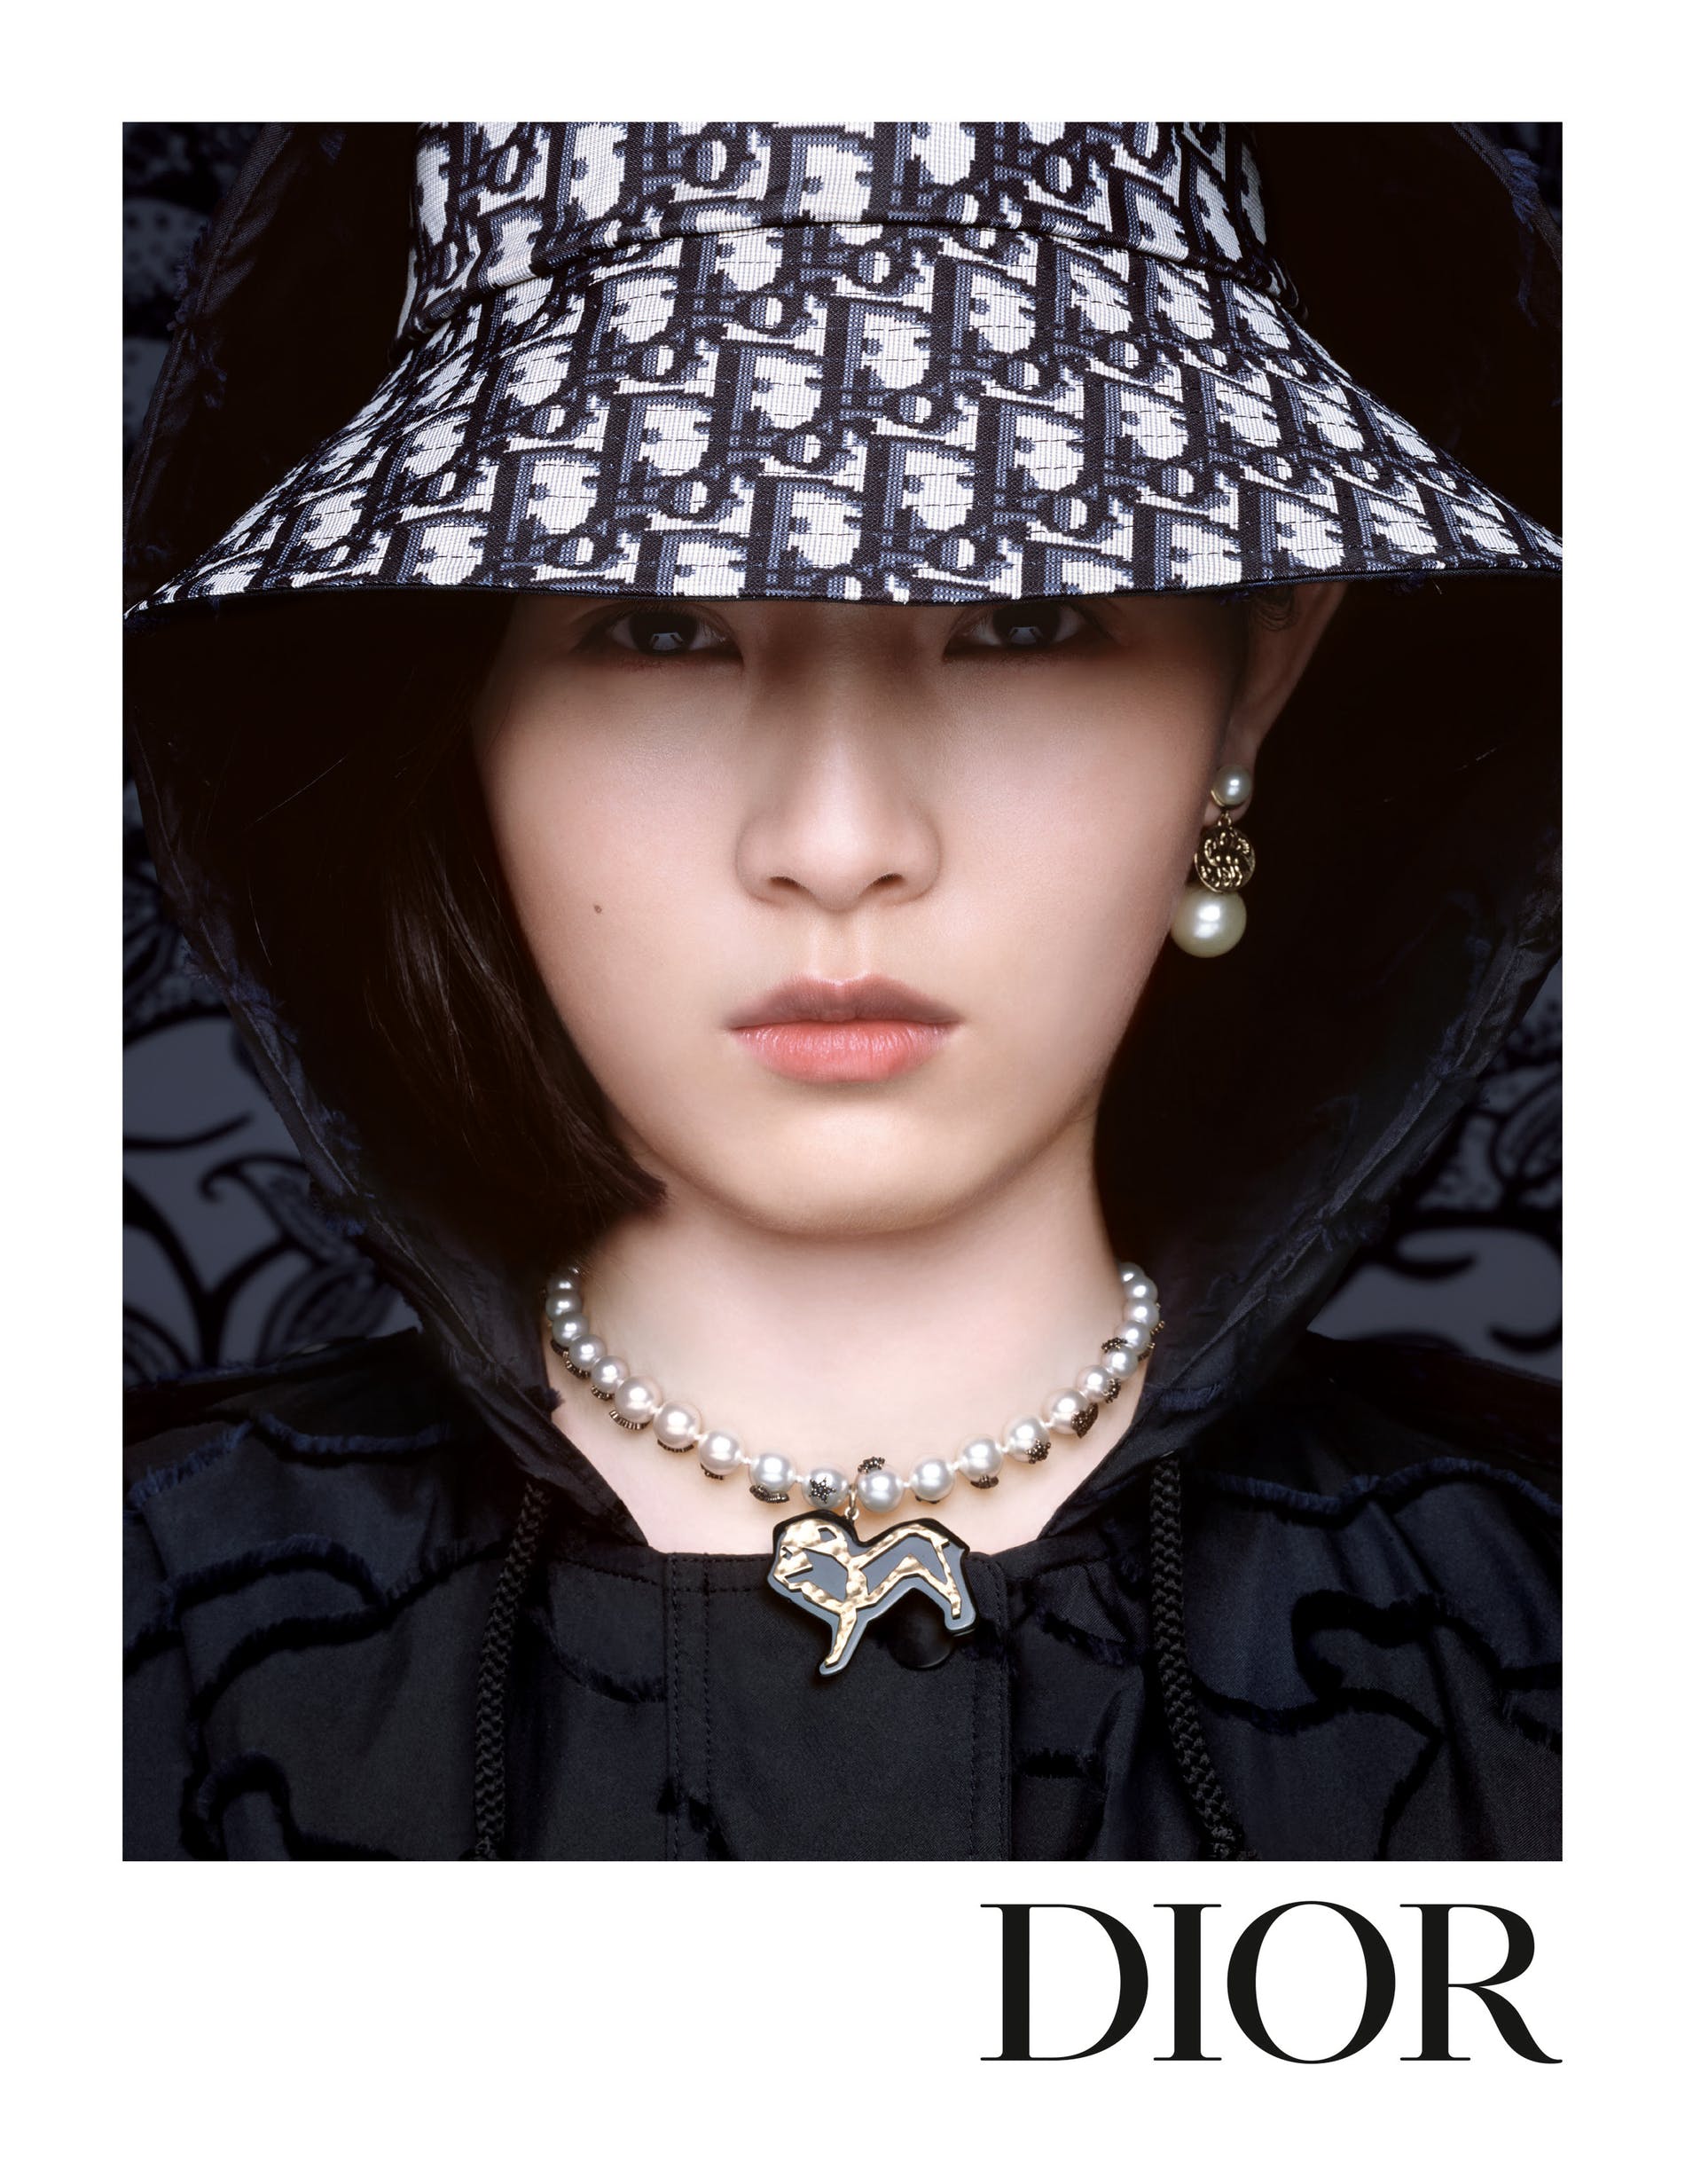 Dior celebra  diversidade em nova campanha. Vem ver!